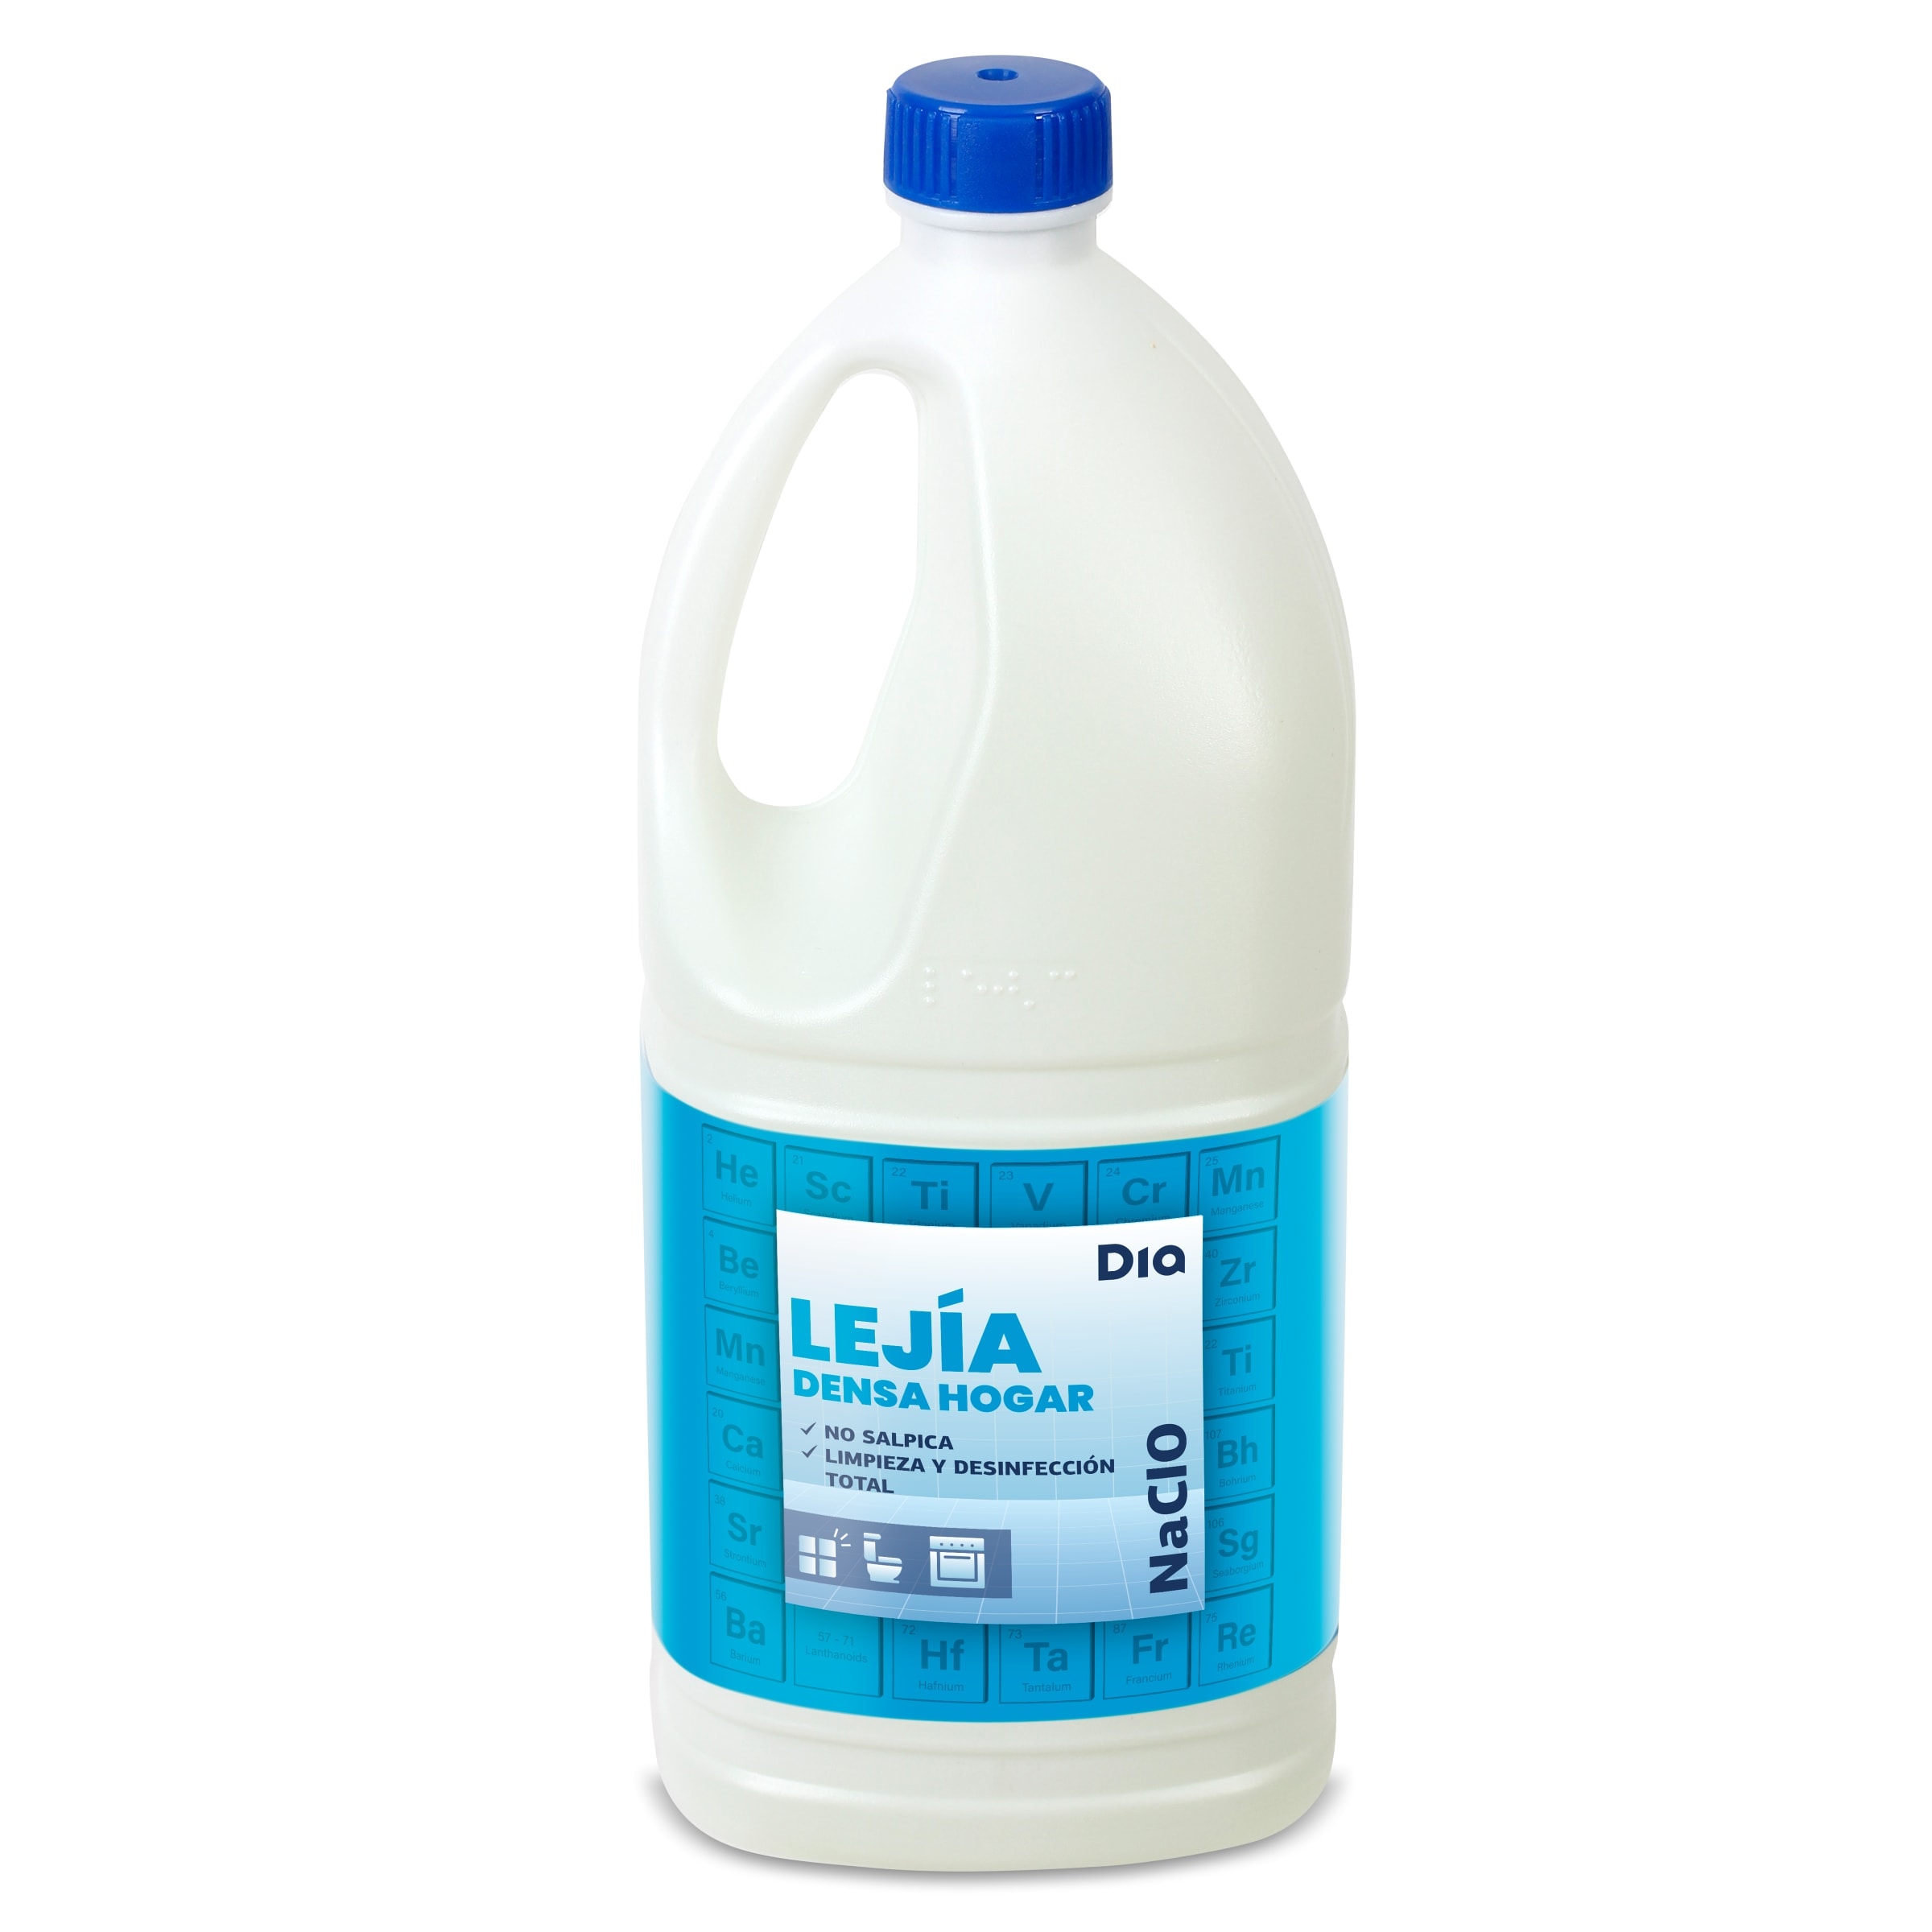 Amoniaco perfumado Dia botella 1.5 l - Supermercados DIA